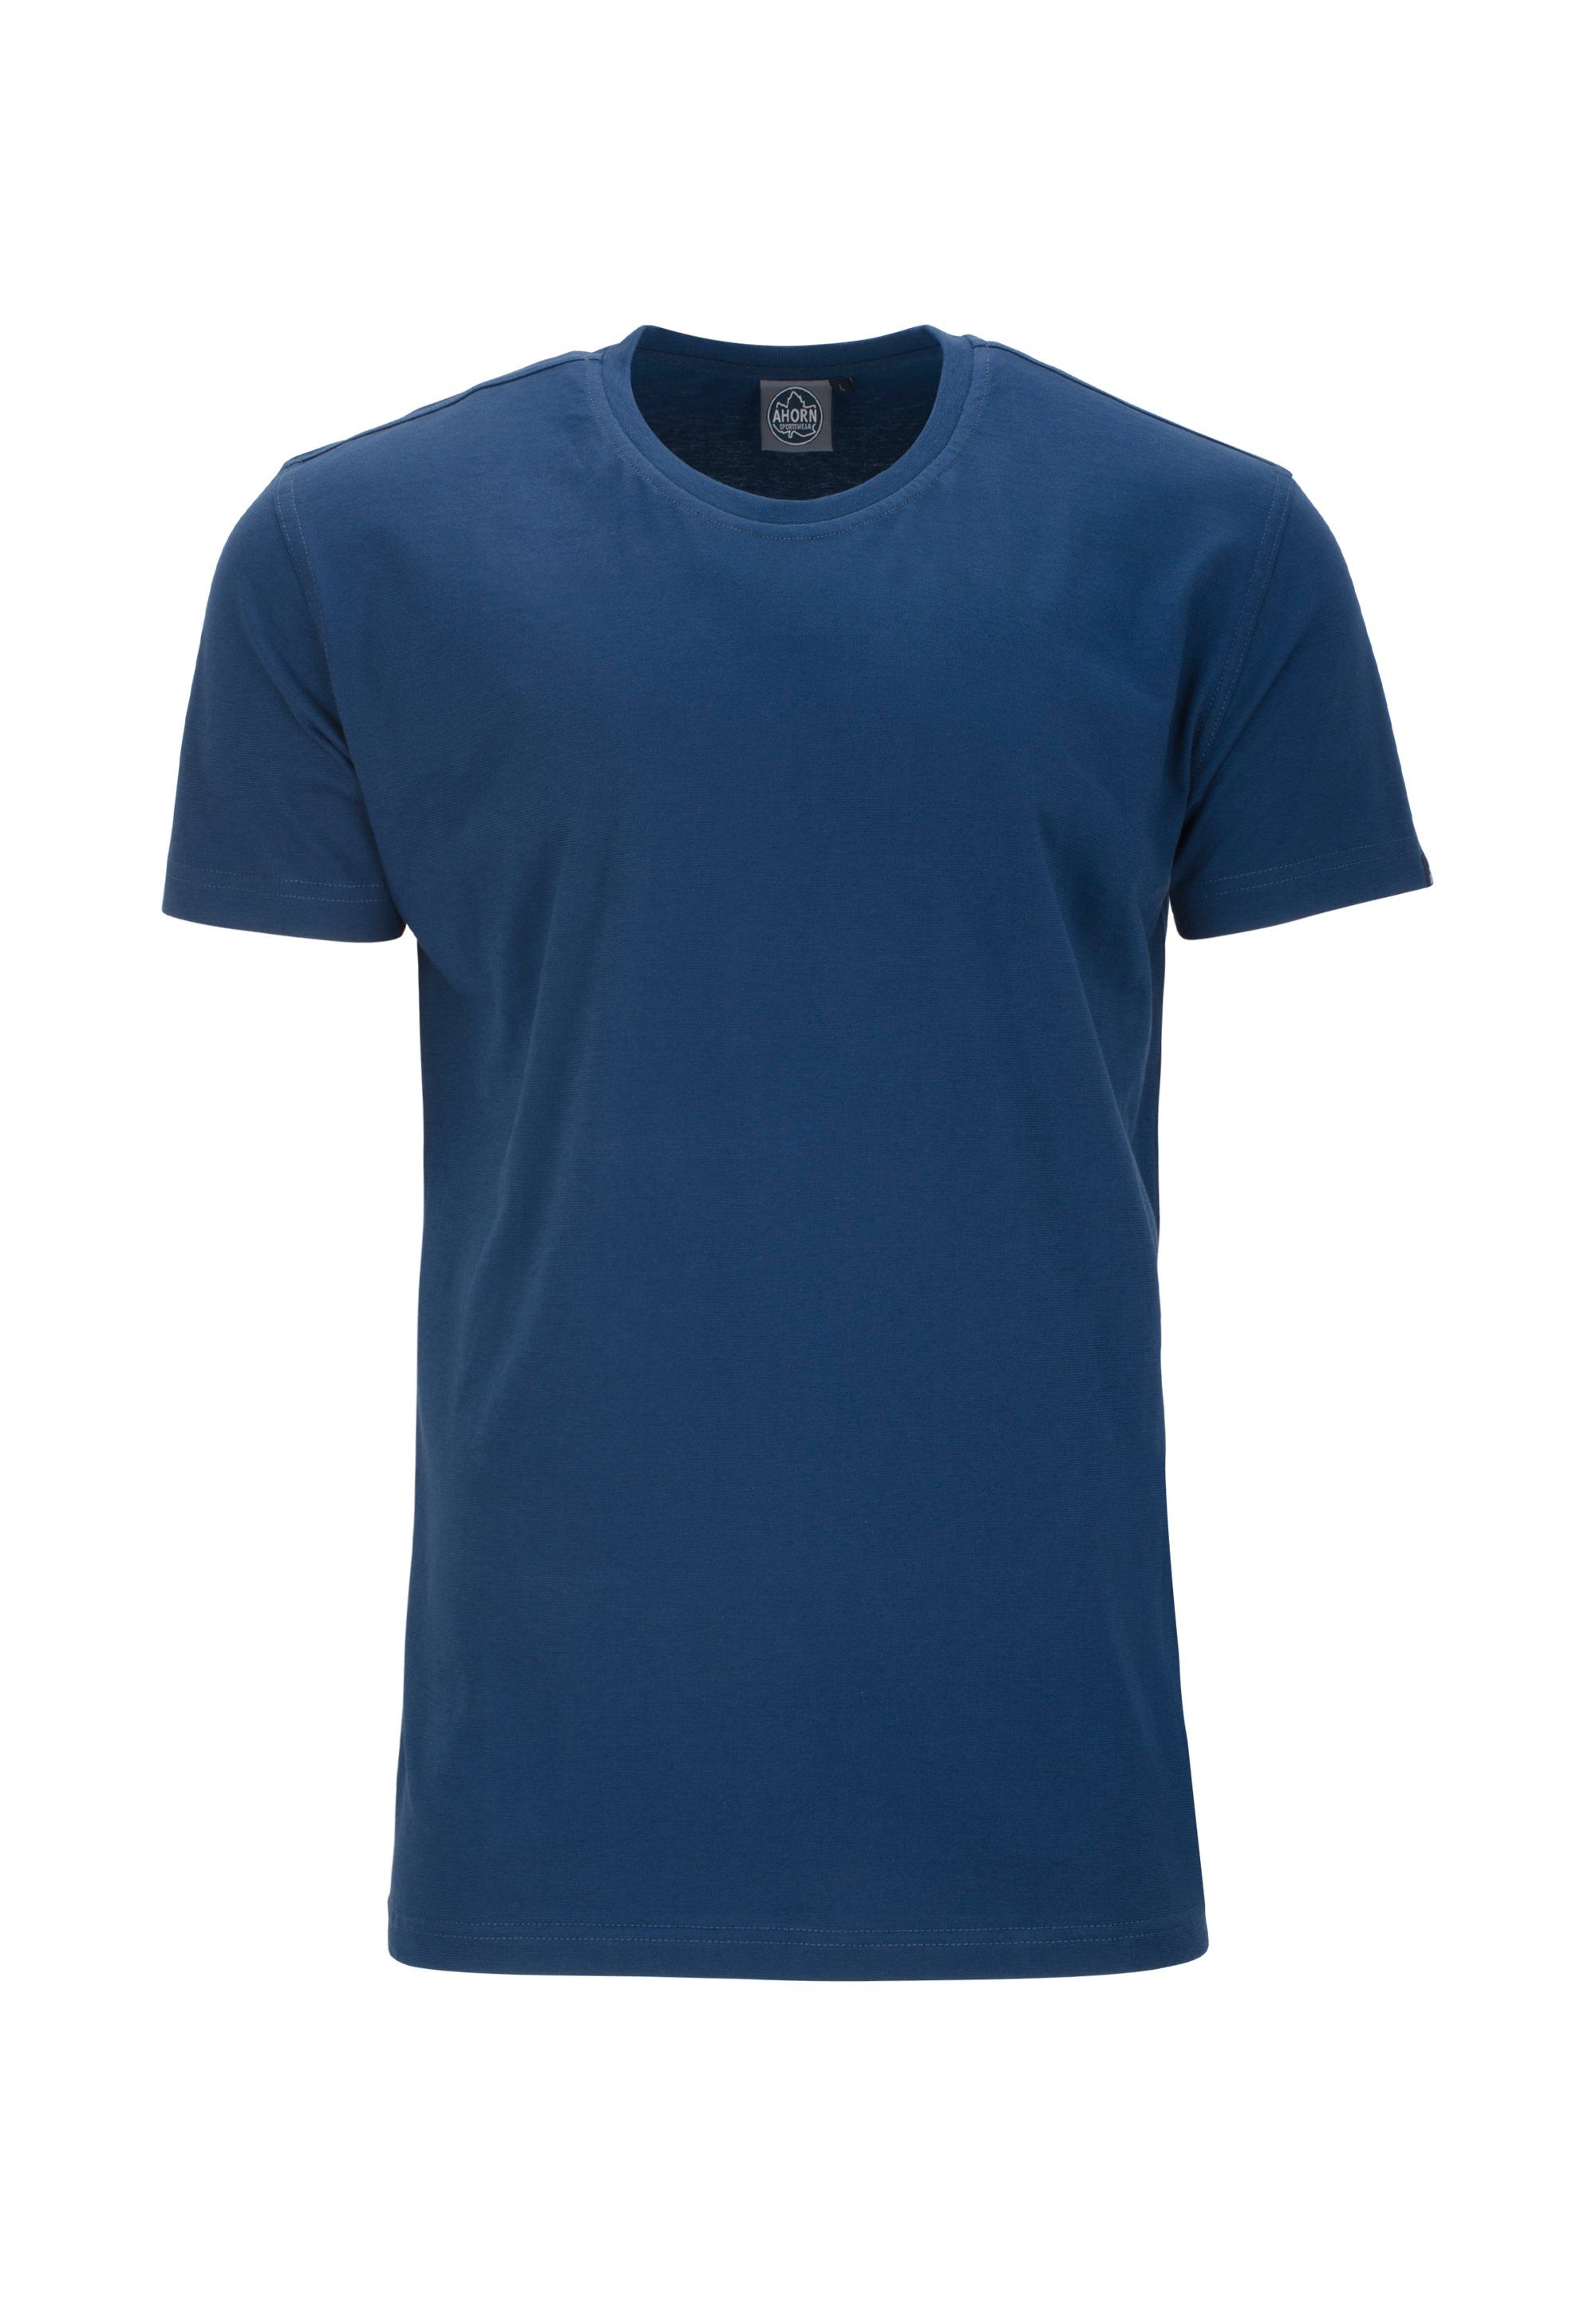 AHORN SPORTSWEAR T-Shirt im klassischen Basic-Look blau